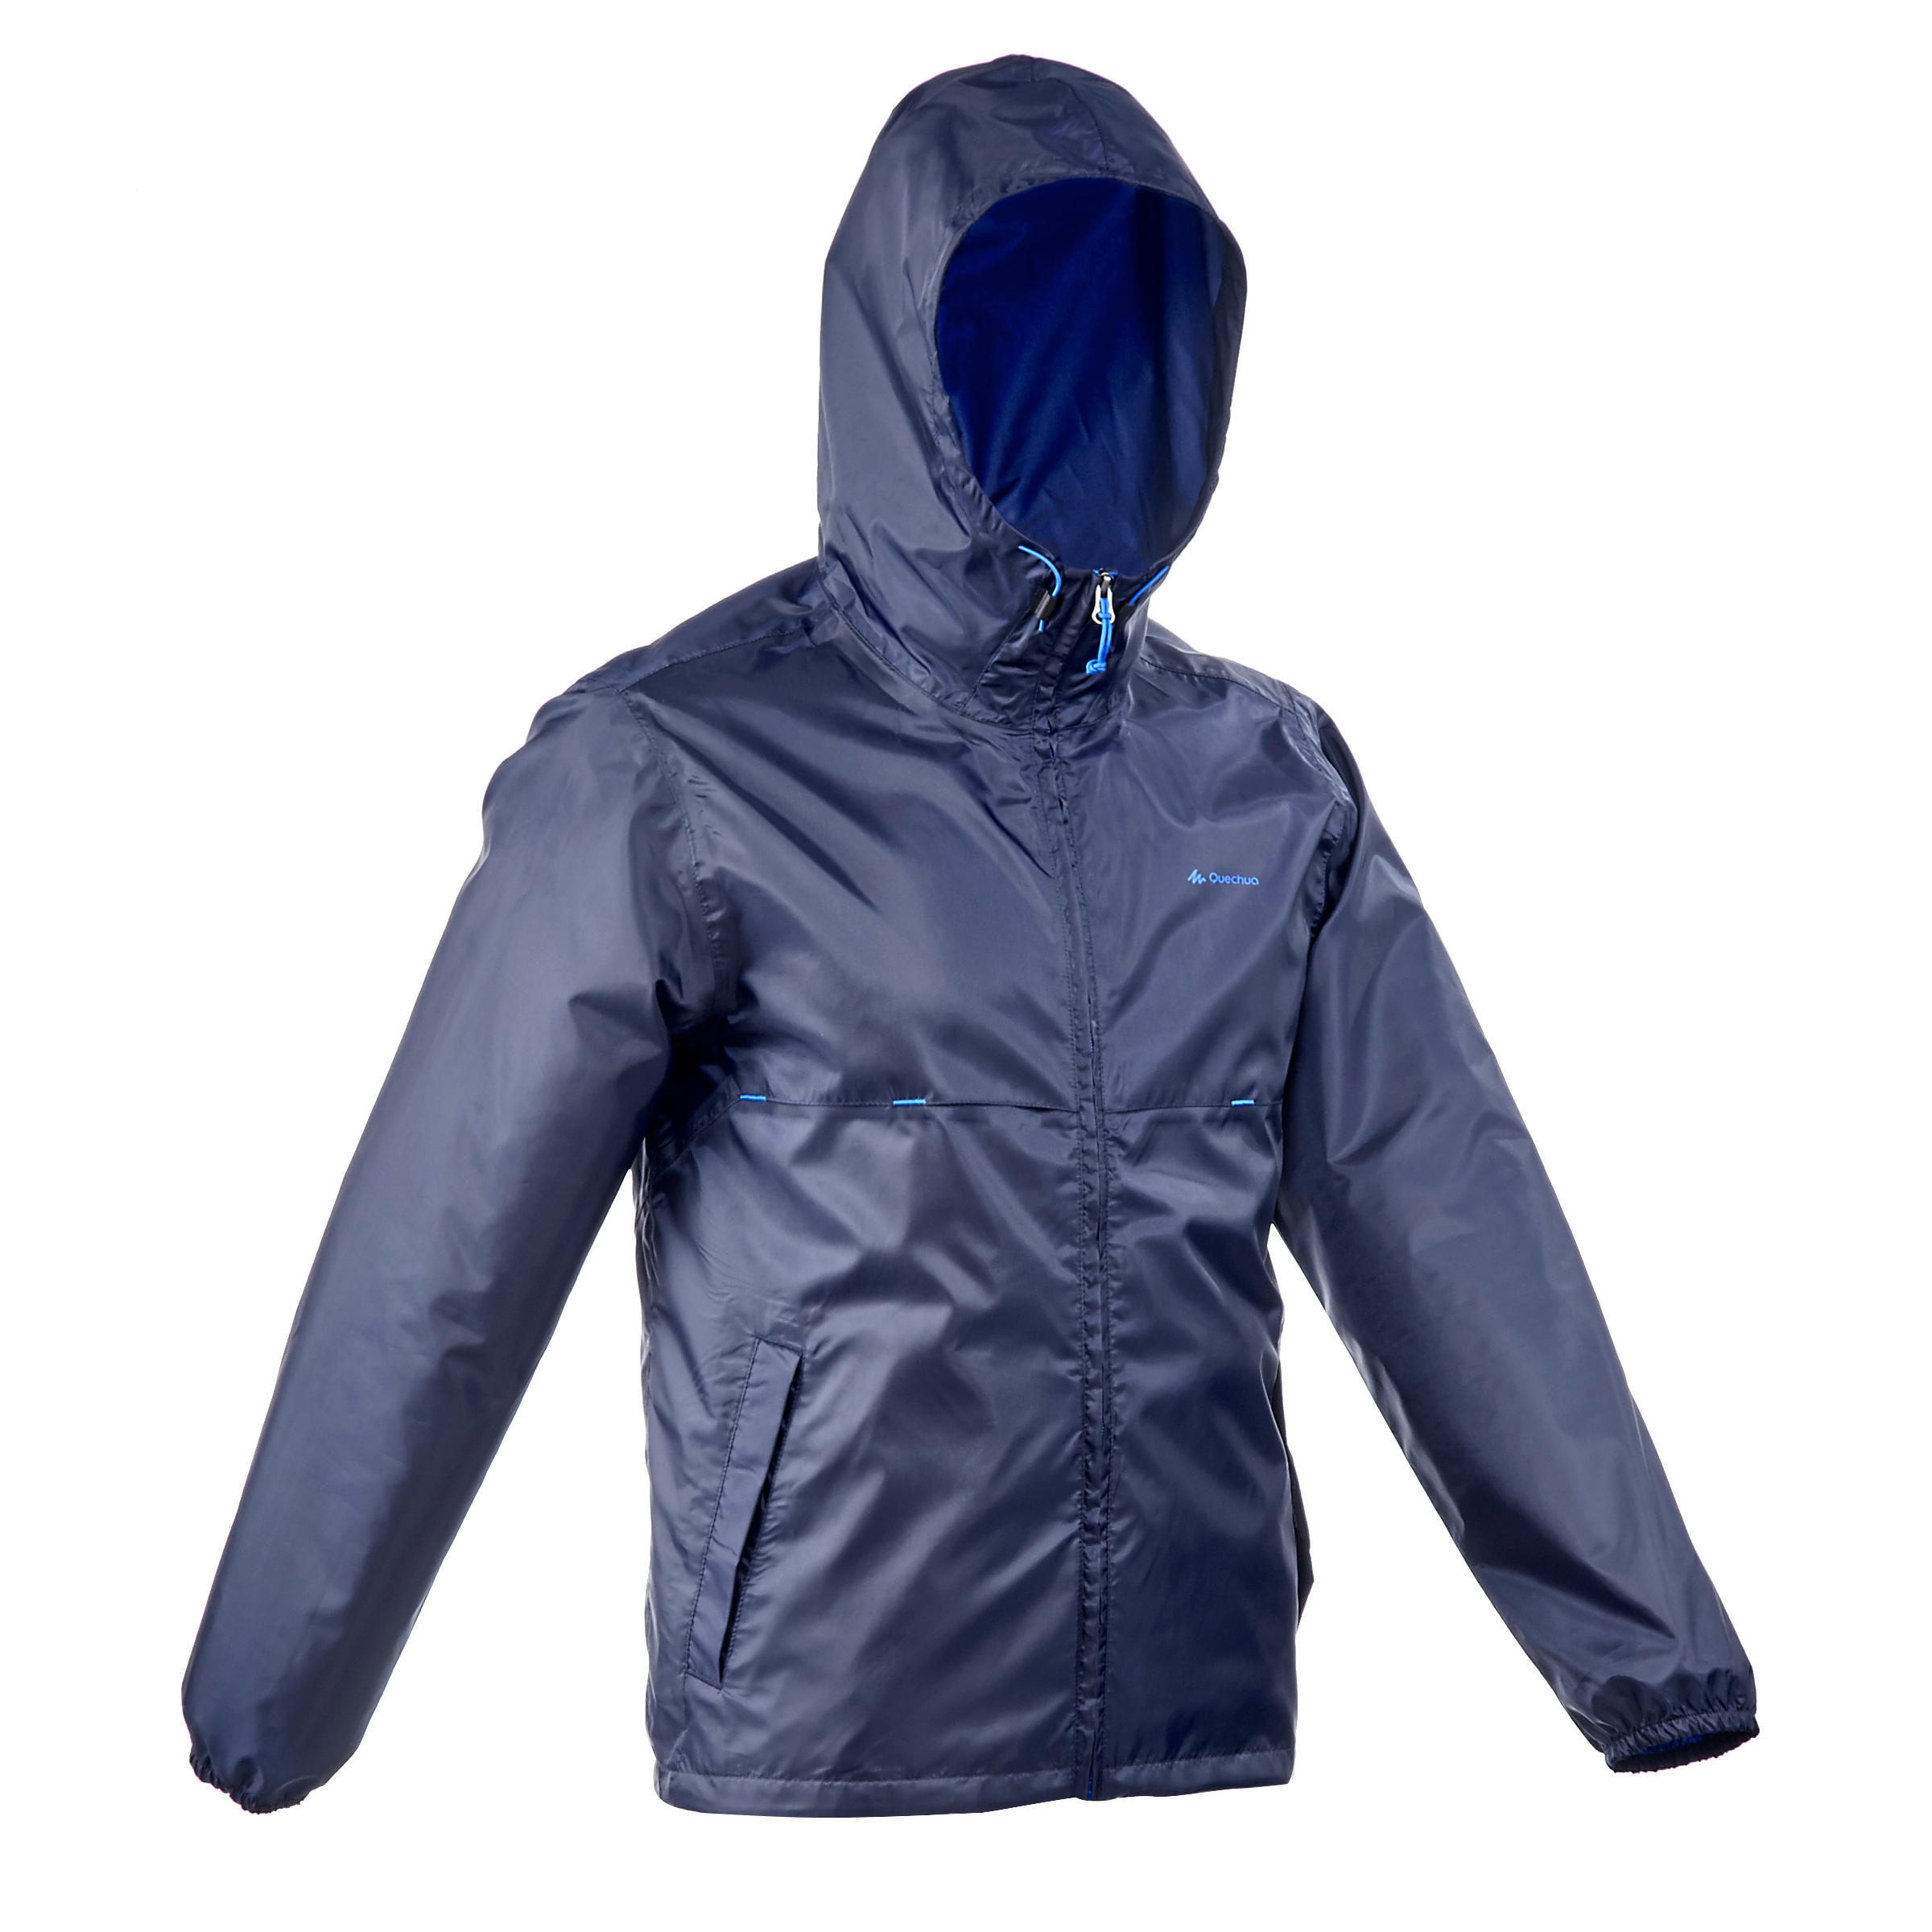 waterproof jacket mens decathlon